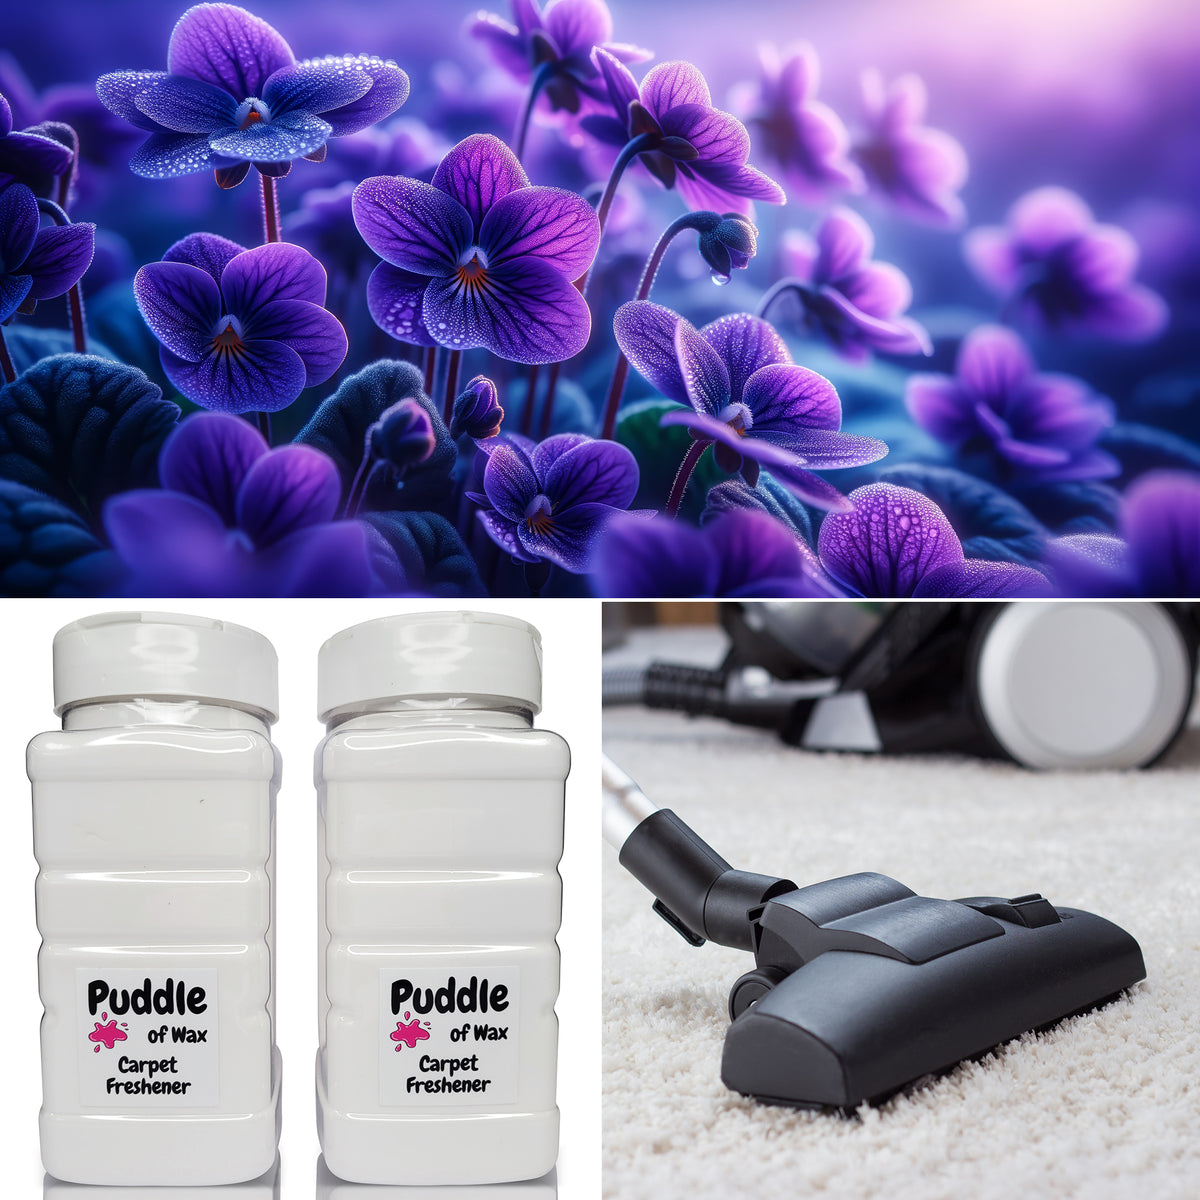 Parma Violet Carpet Freshener